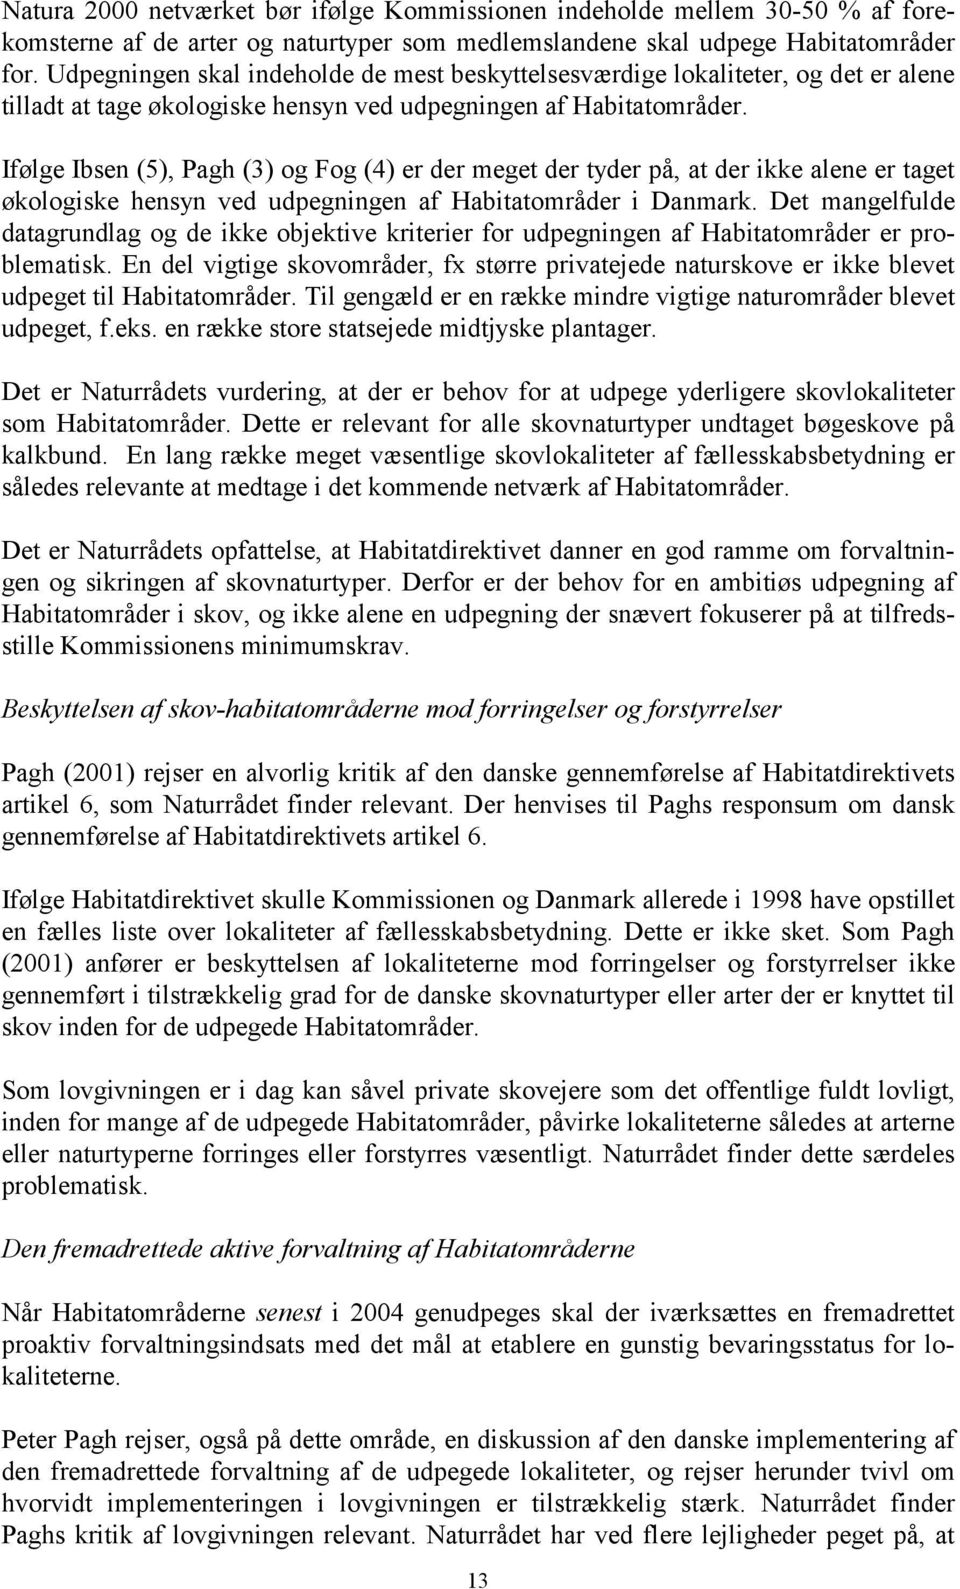 Ifølge Ibsen (5), Pagh (3) og Fog (4) er der meget der tyder på, at der ikke alene er taget økologiske hensyn ved udpegningen af Habitatområder i Danmark.